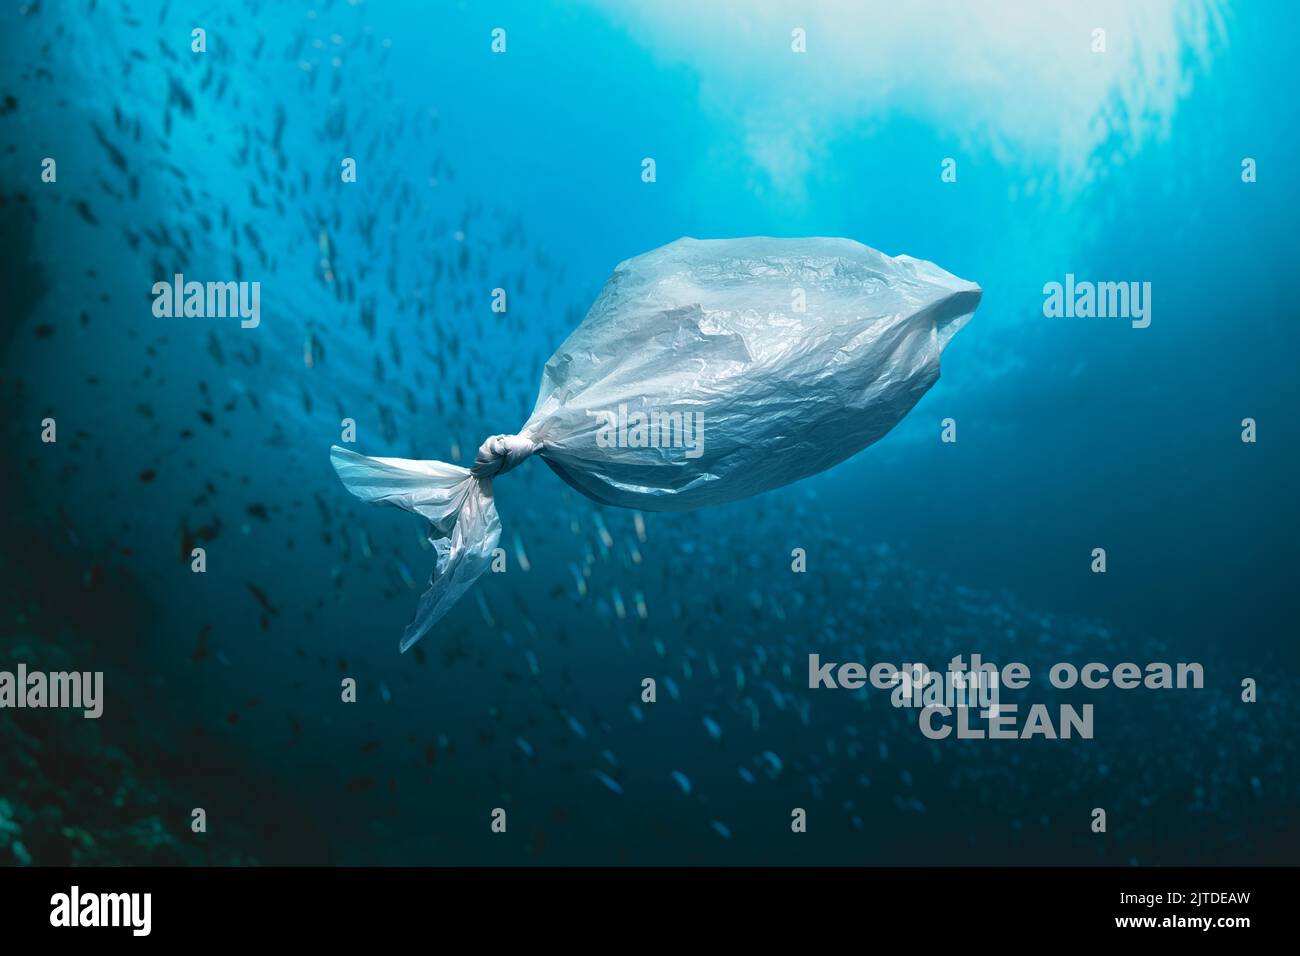 Plastic bag floating in the ocean - KEEP THE OCEAN CLEAN Stock Photo